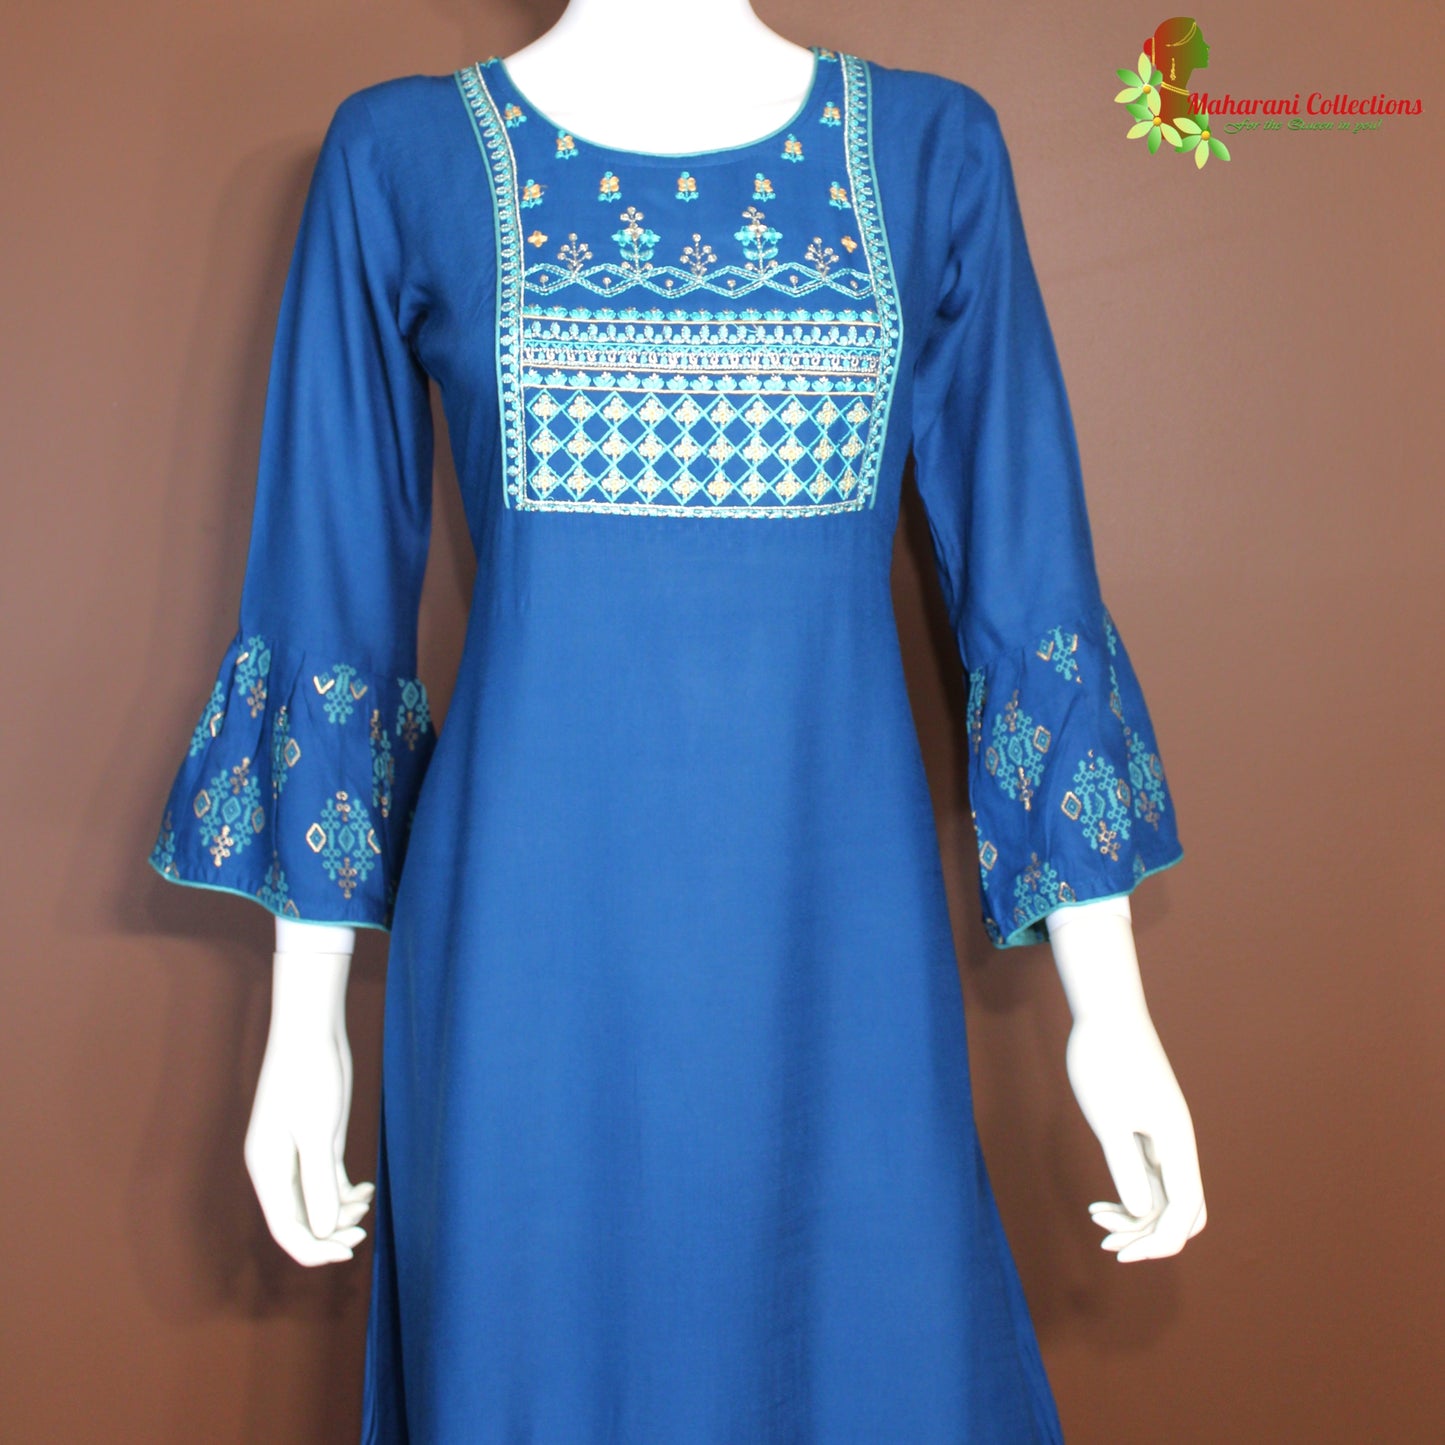 Maharani's Long Dress - Soft Cotton - Royal Blue (S)